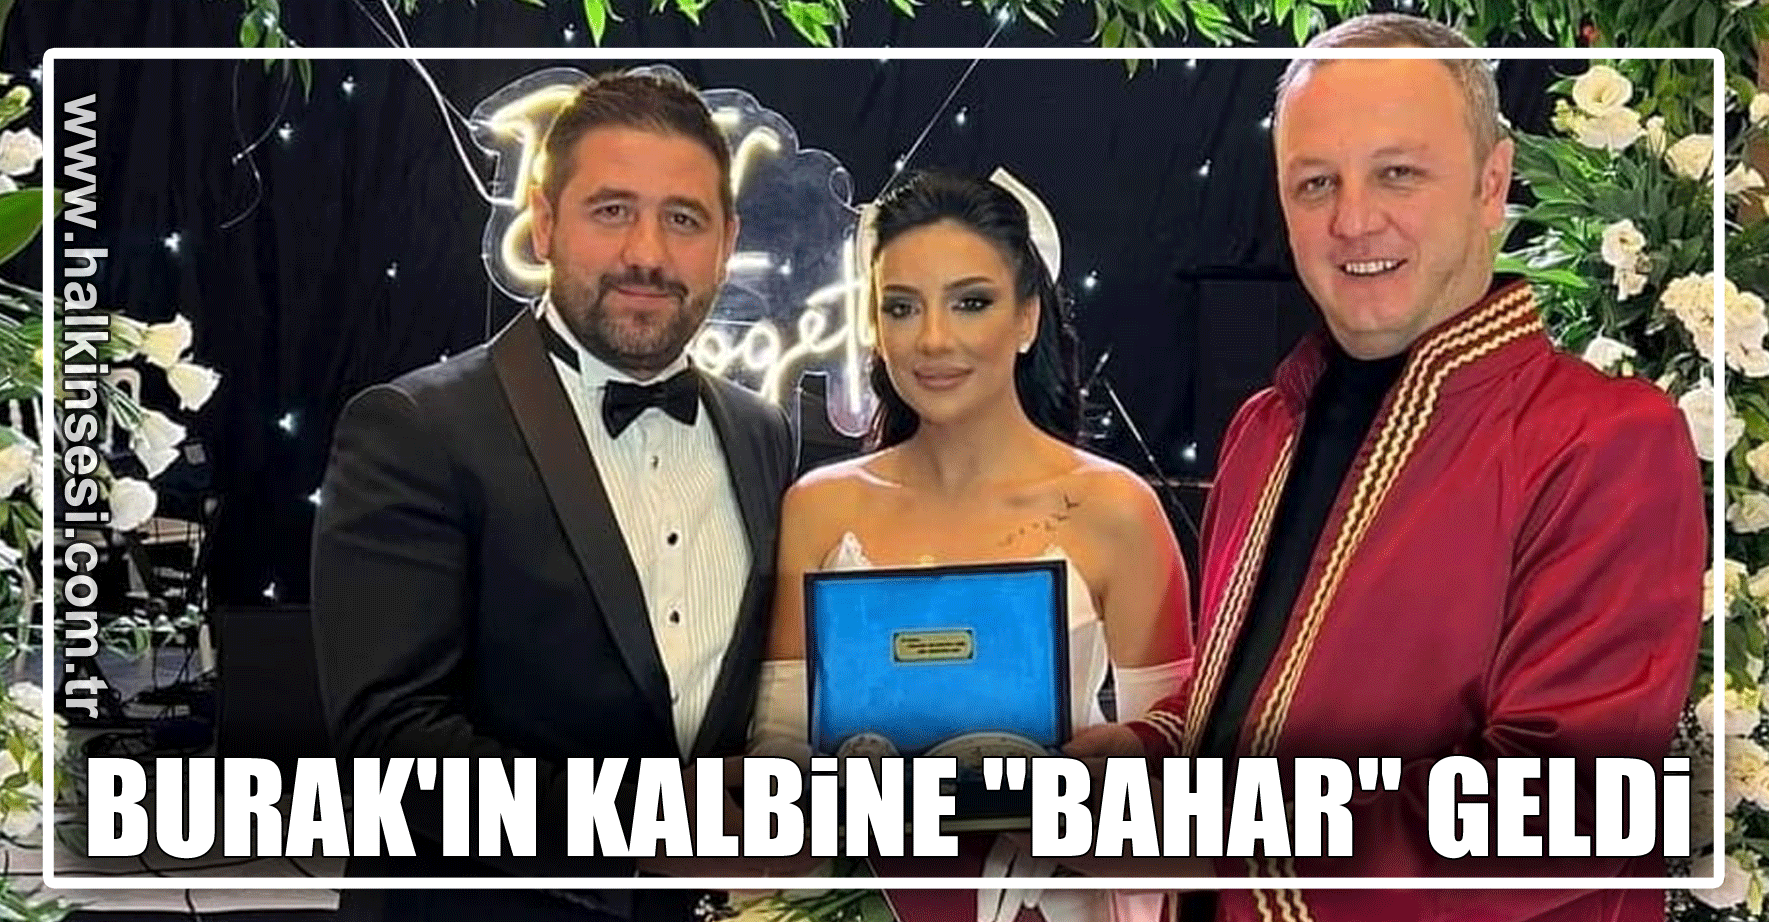 BURAK'IN KALBİNE  "BAHAR" GELDİ